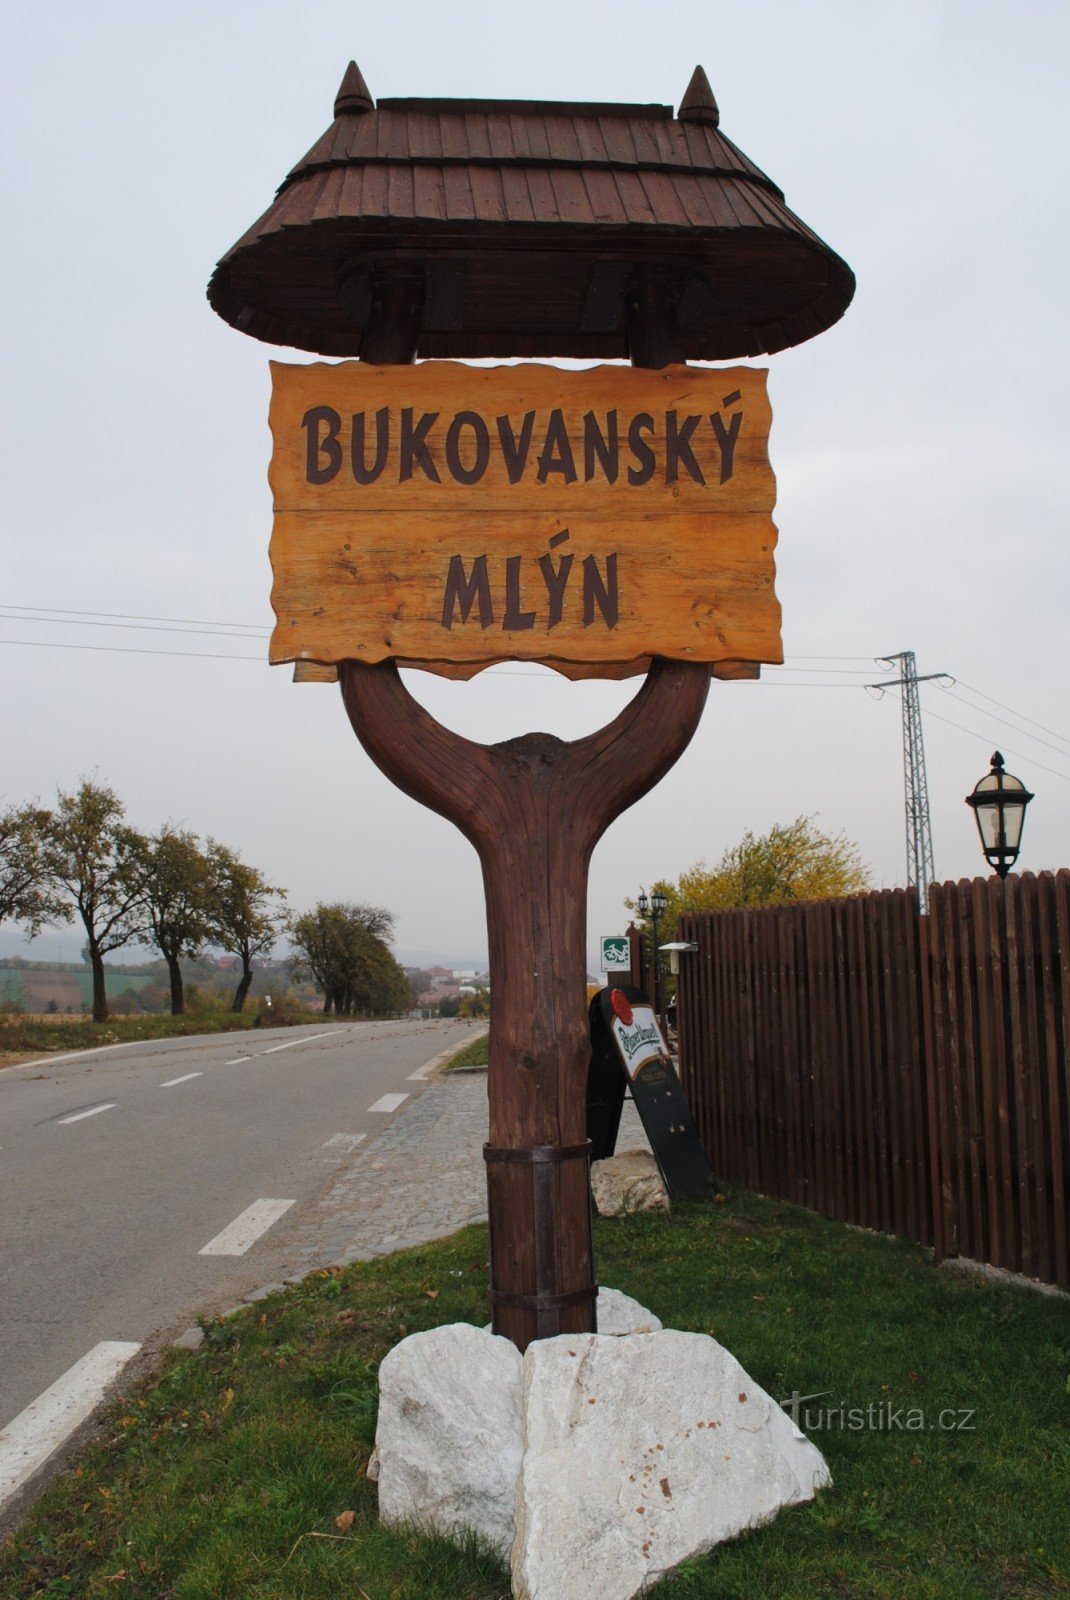 Bukovany mill ***